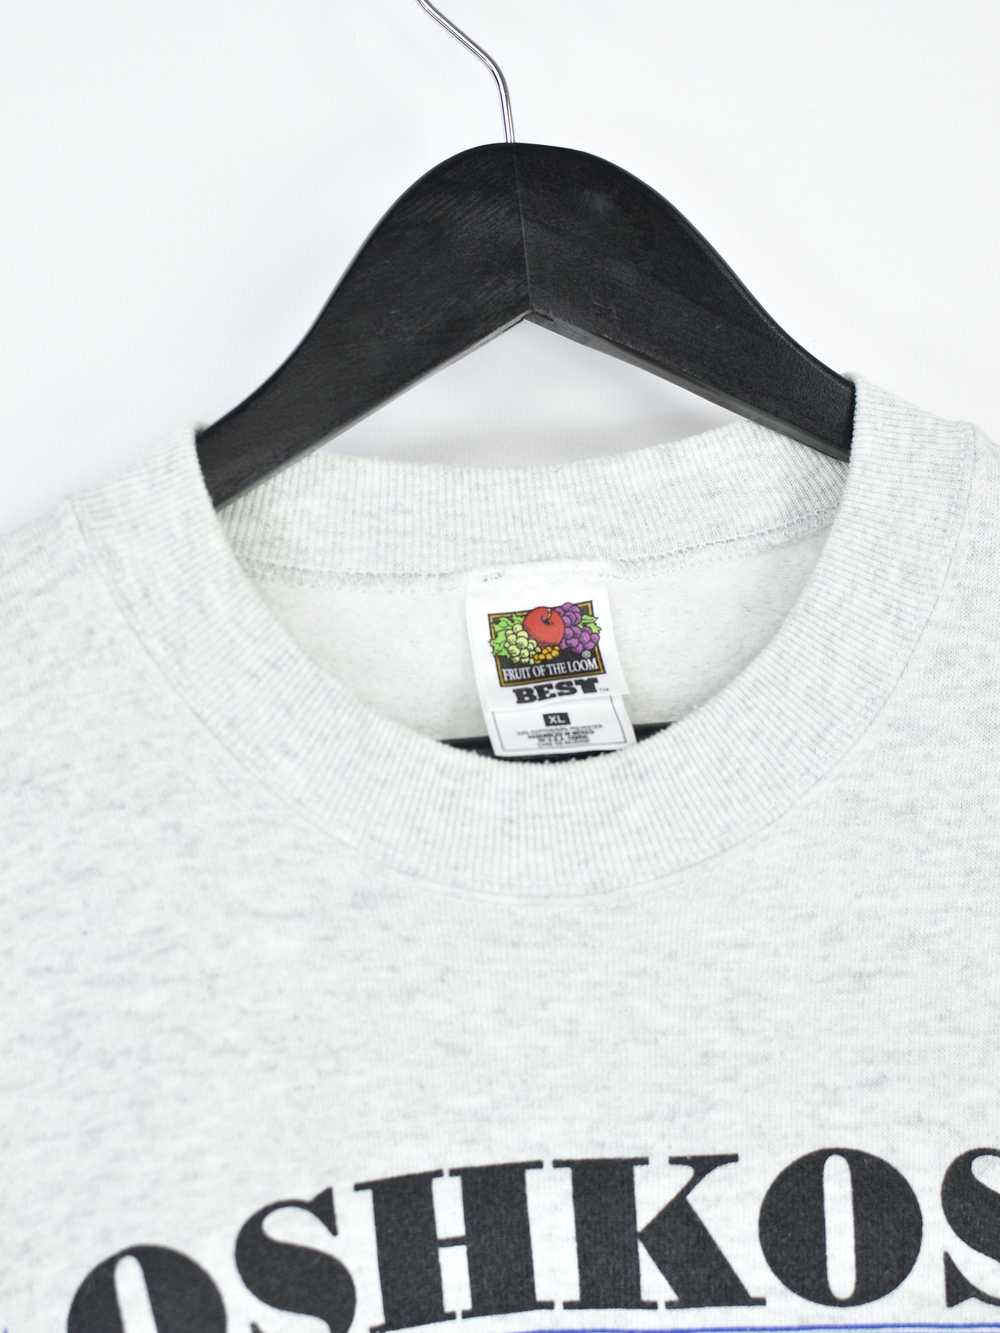 Oshkosh × Vintage Vintage Oshkosh 1997 Sweatshirt - image 4